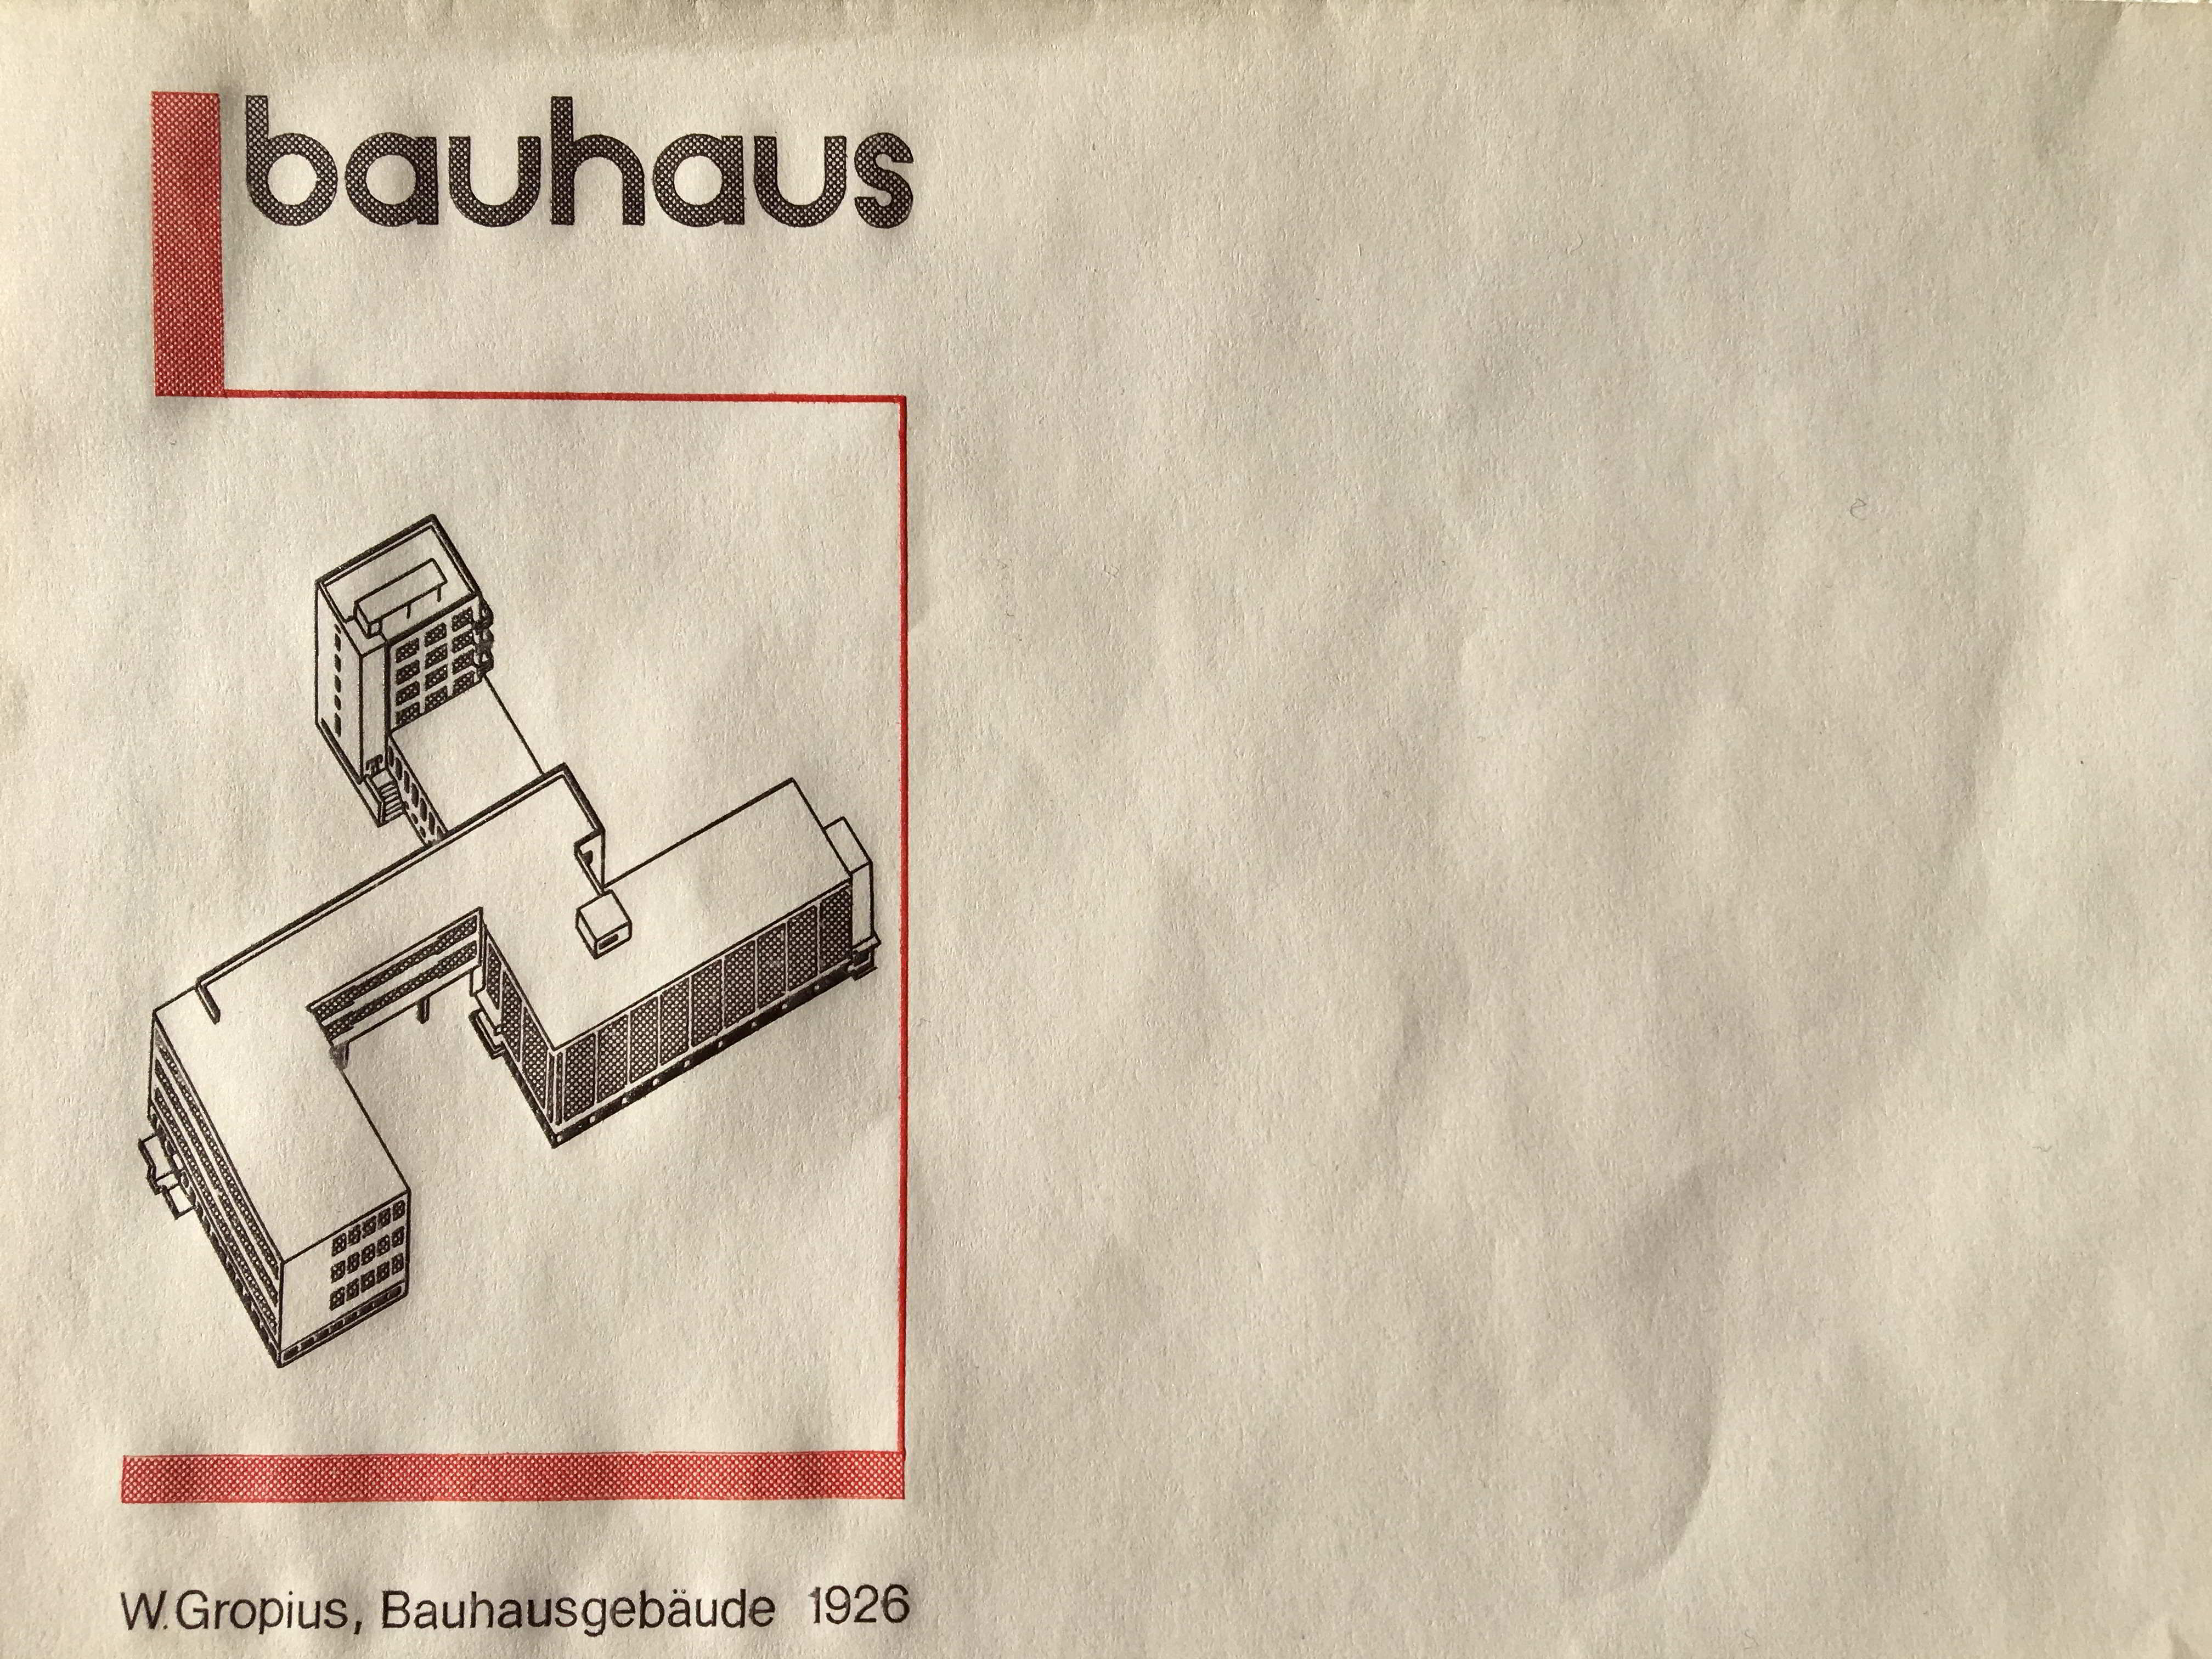 Standortvorteil Bauhaus Rosa Luxemburg Stiftung